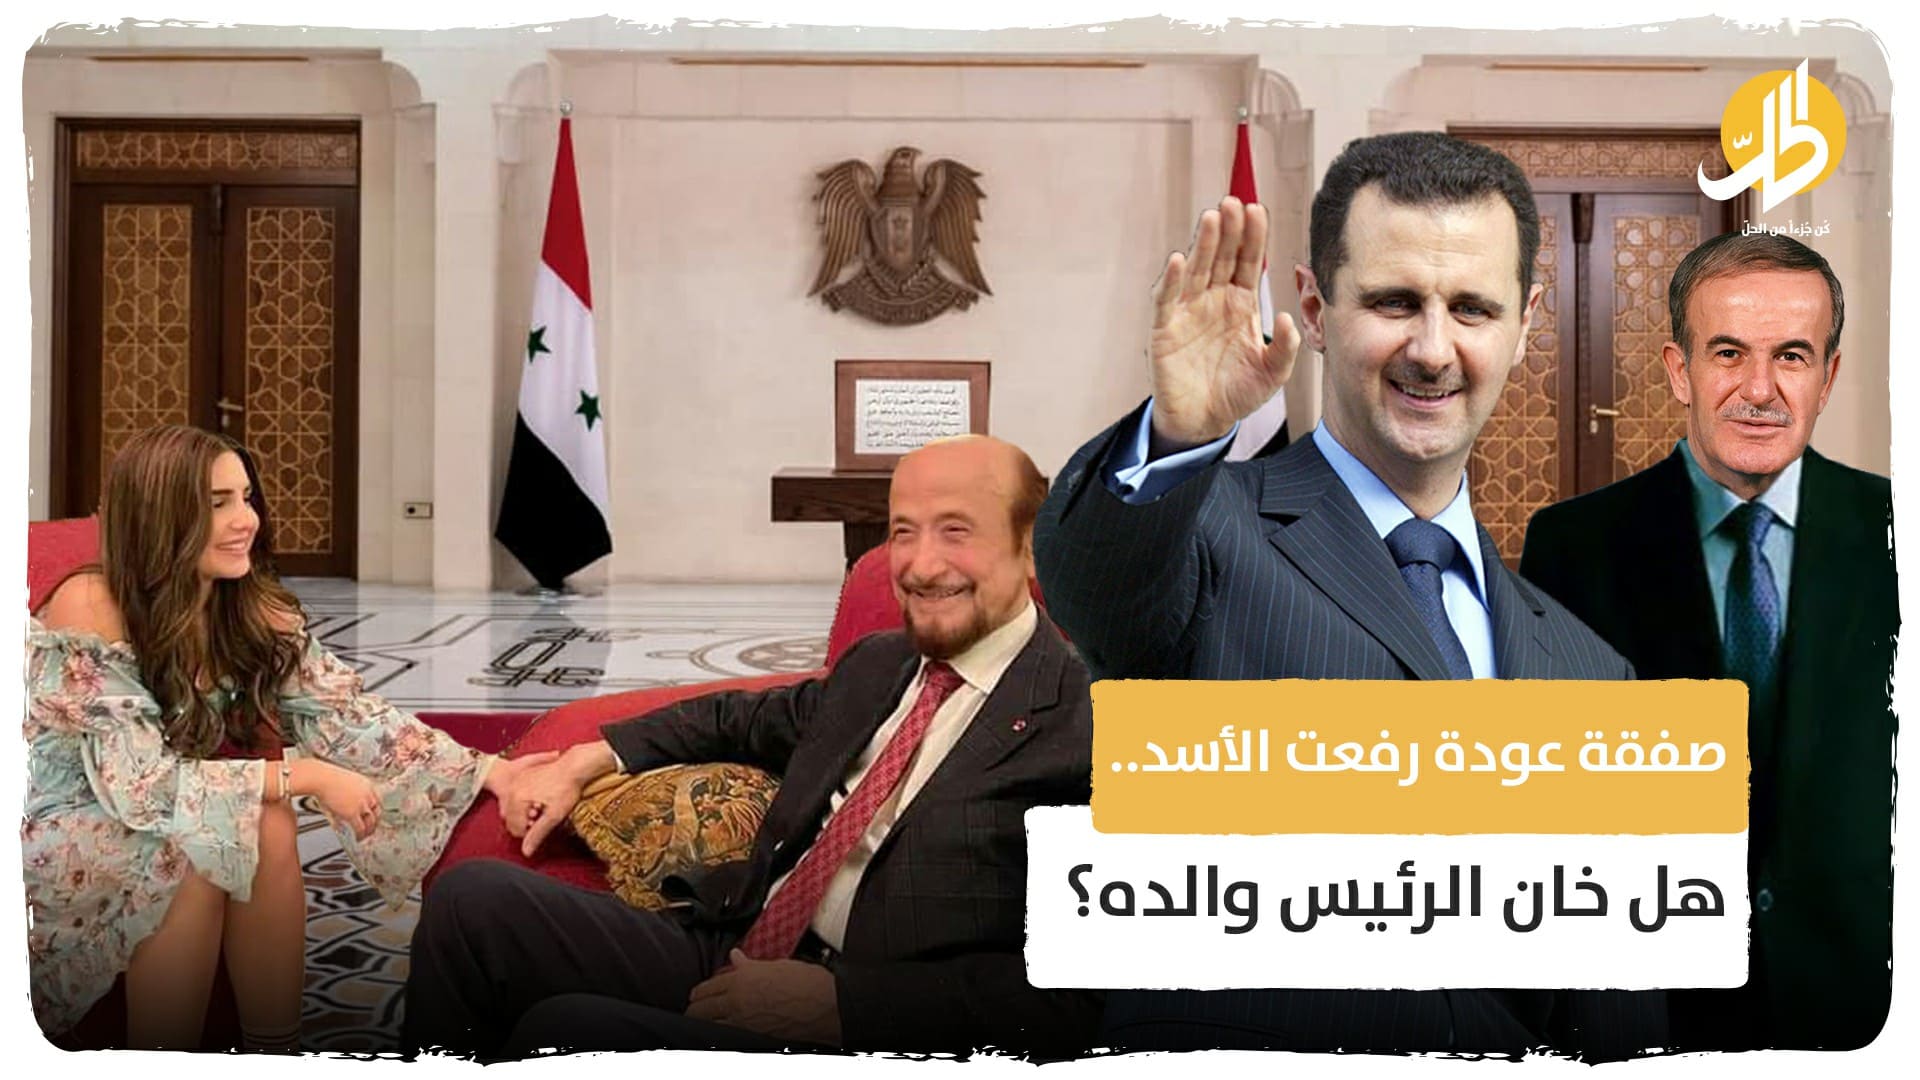 صفقة عودة رفعت الأسد.. هل خان الرئيس والده؟ تفاصيل متأخرة عن الهروب العكسي للأسد العم إلى سوريا